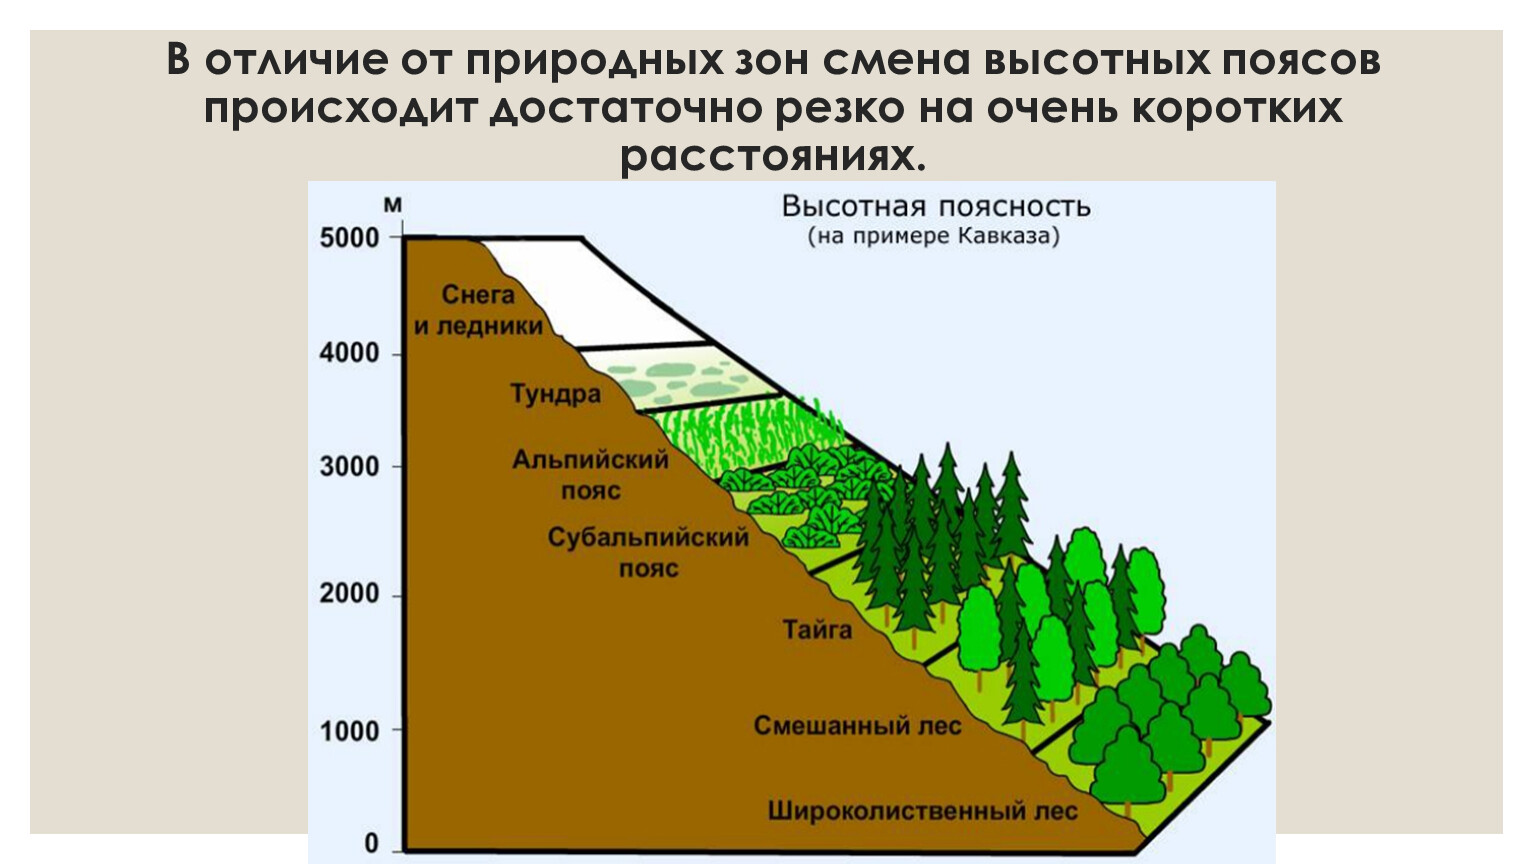 Высотная поясность гор Кавказа